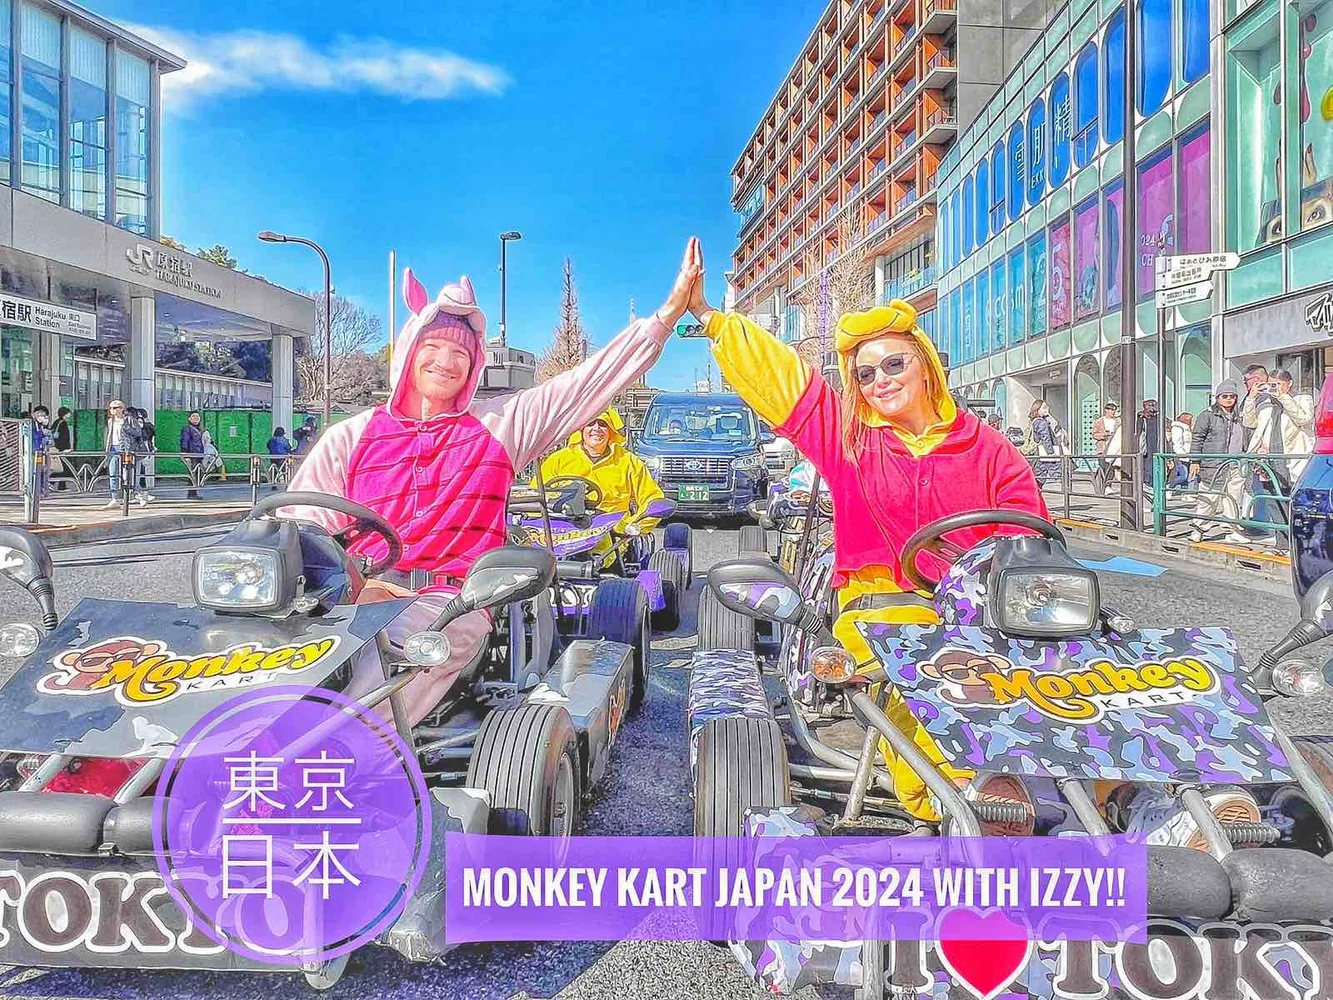 Shibuya Monkey Kart Tour on a Customized Go-Kart!